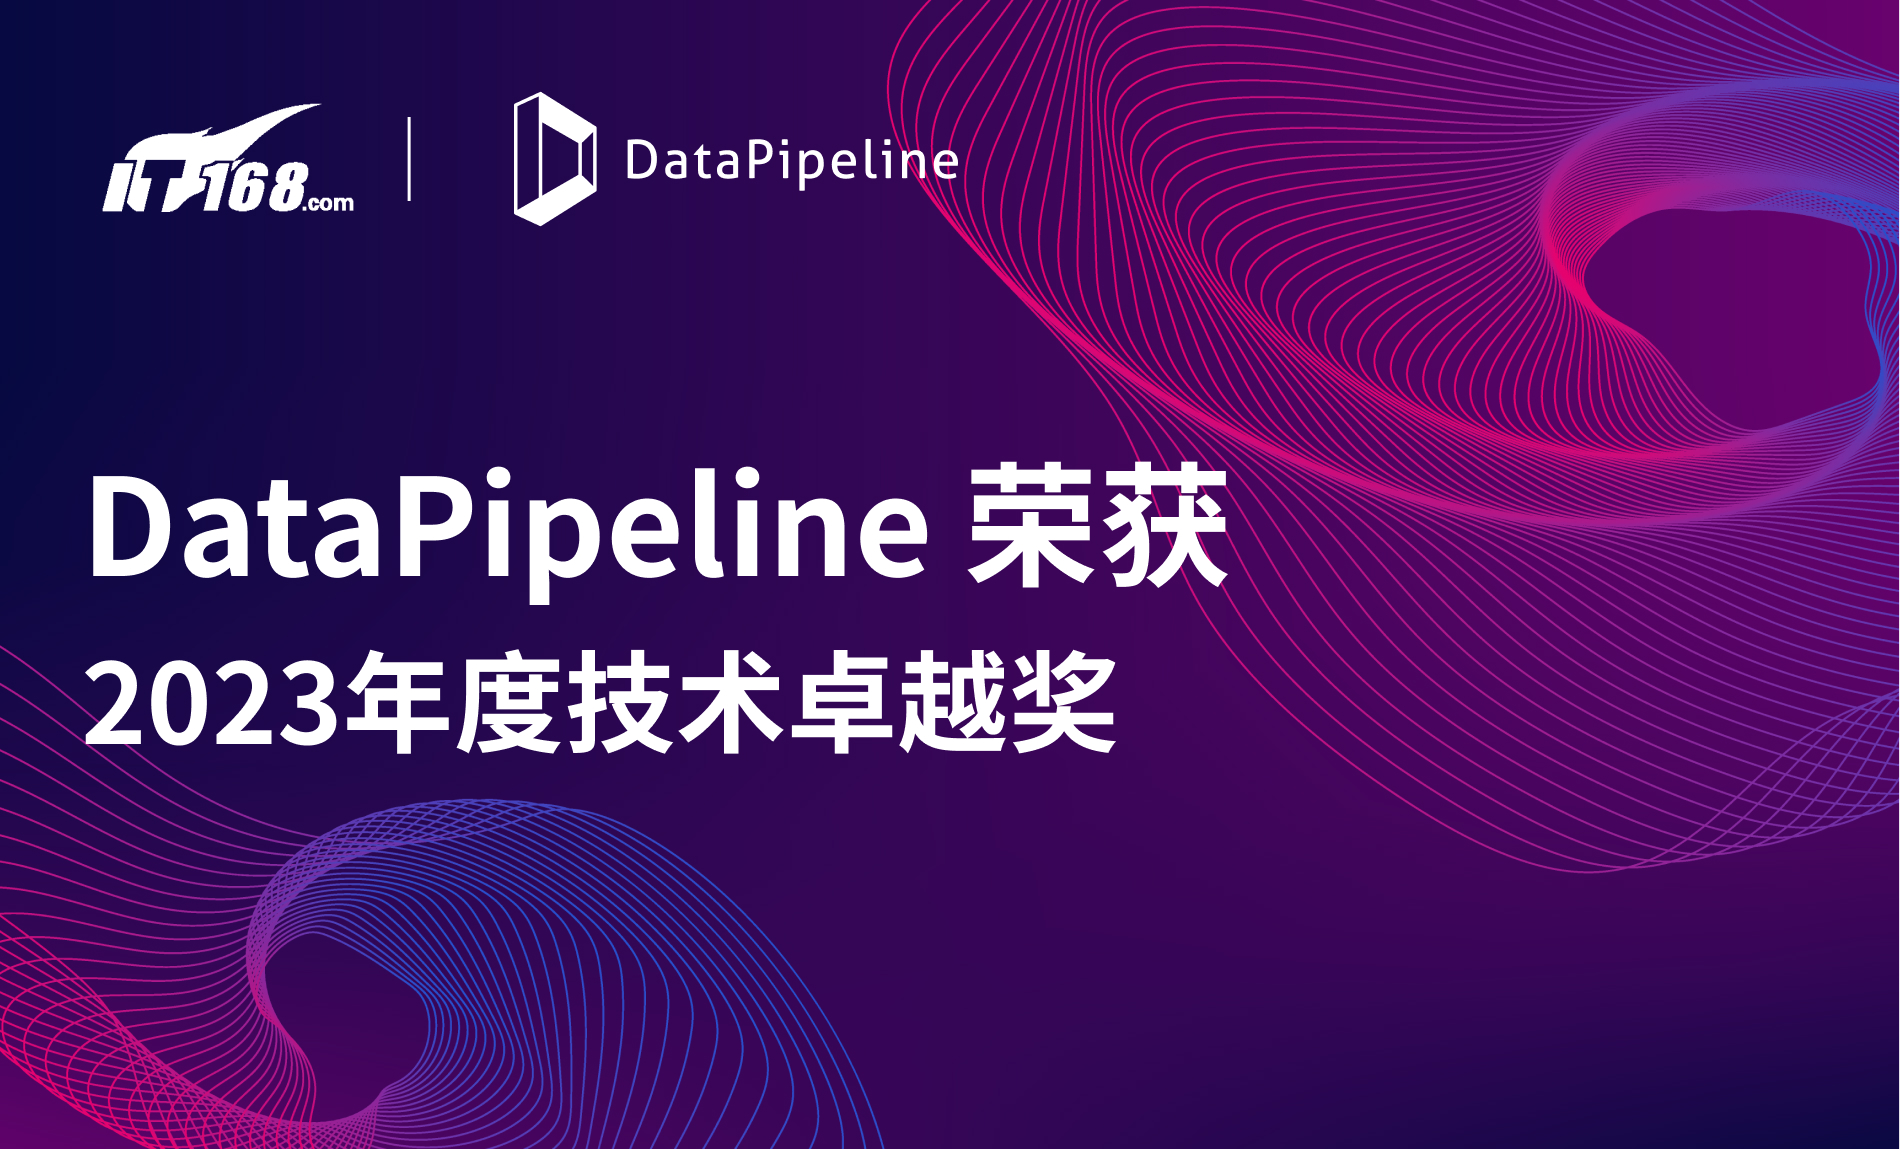 DataPipeline企业级实时数据融合解决方案荣获“2023年度技术卓越奖”